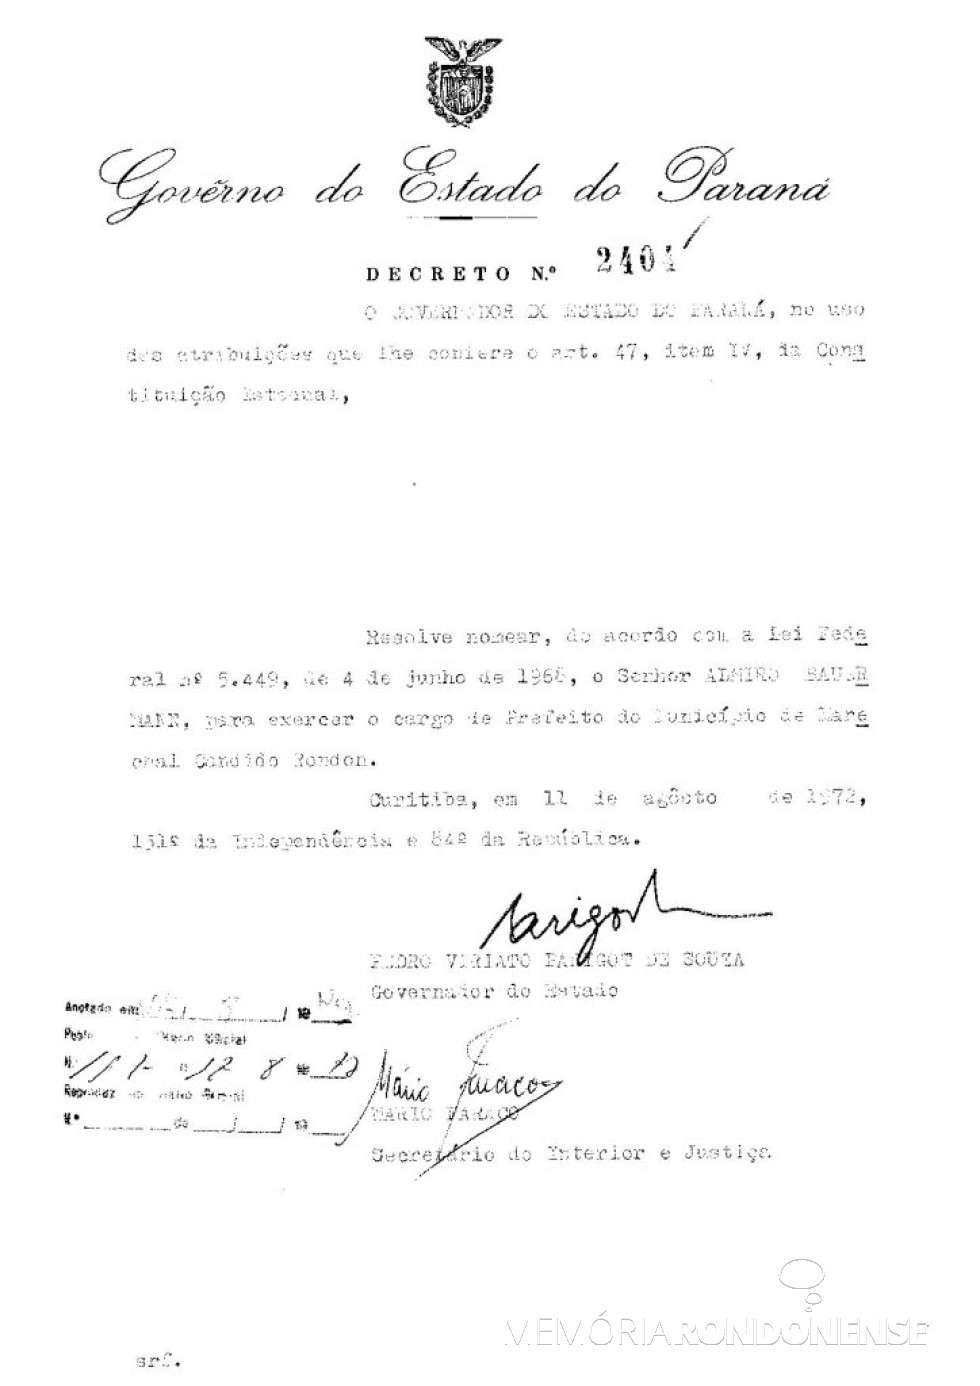 || Cópia do decreto de nomeação de Almiro Bauermann como prefeito municipal de Marechal Cândido Rondon, em agosto de 1972.
Imagem: Acervo Arquivo Público do Paraná - FOTO 1 - 